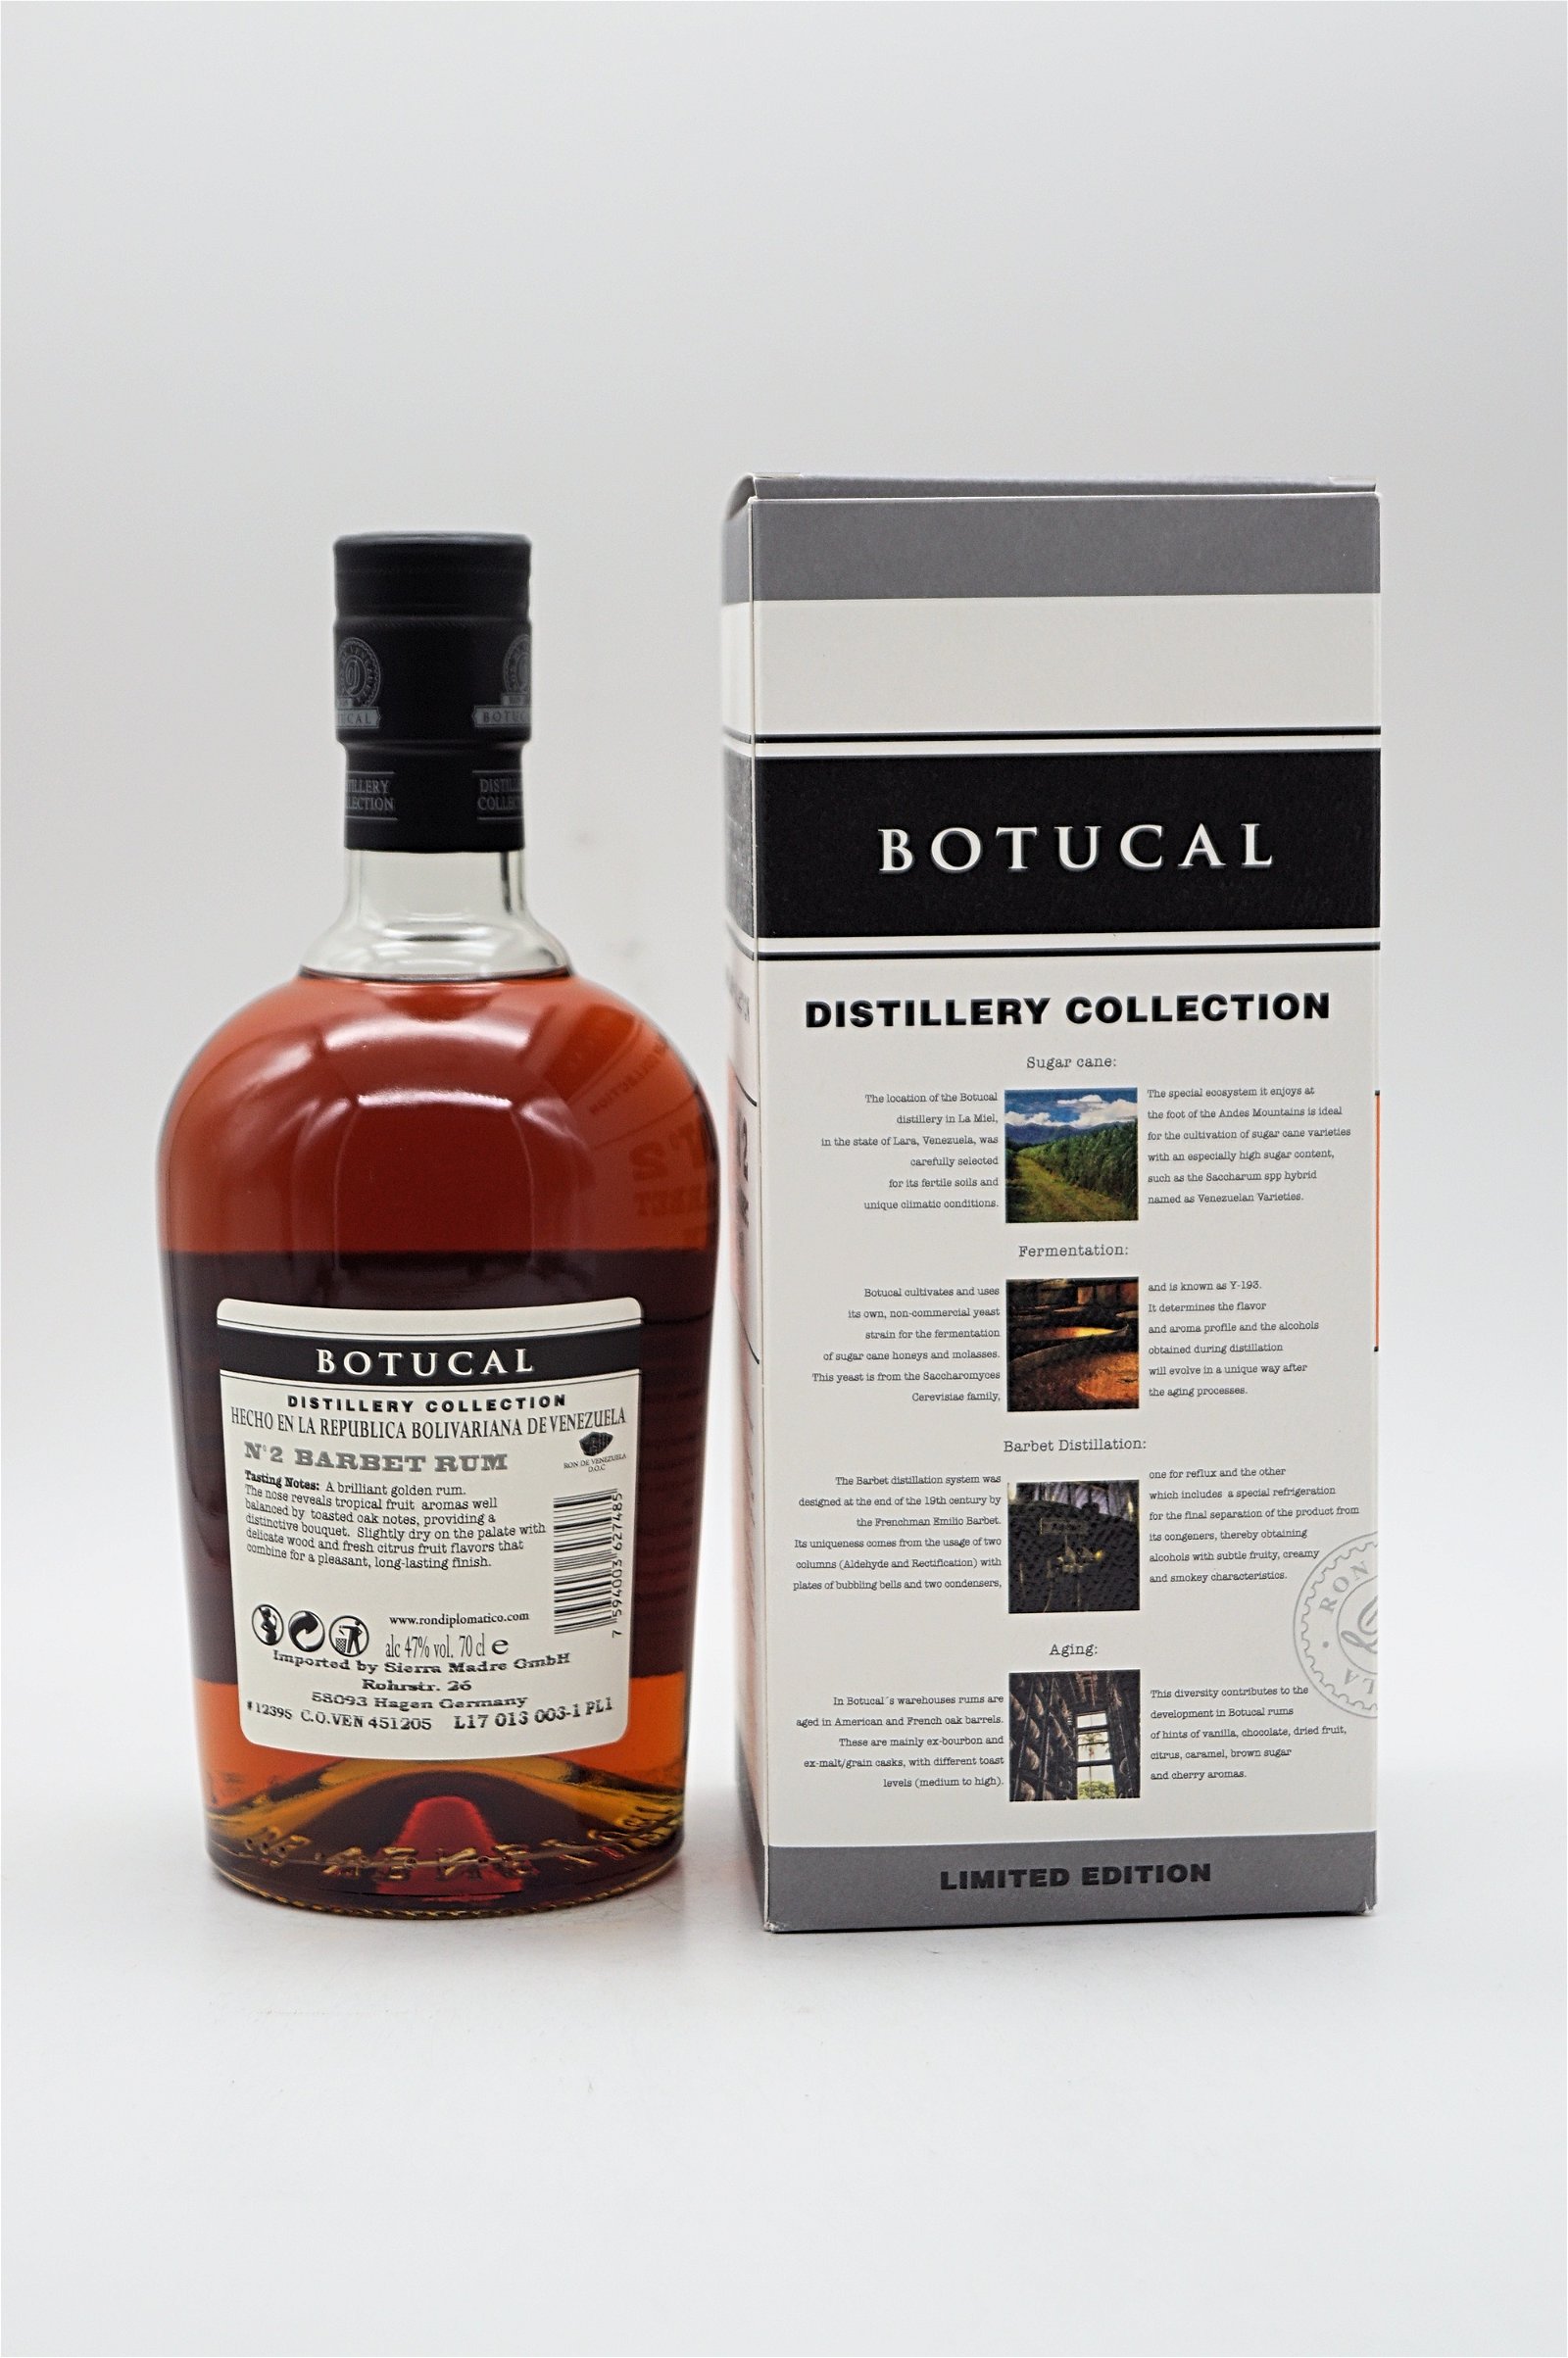 Botucal Distillery Collection No 2 Barbet Rum